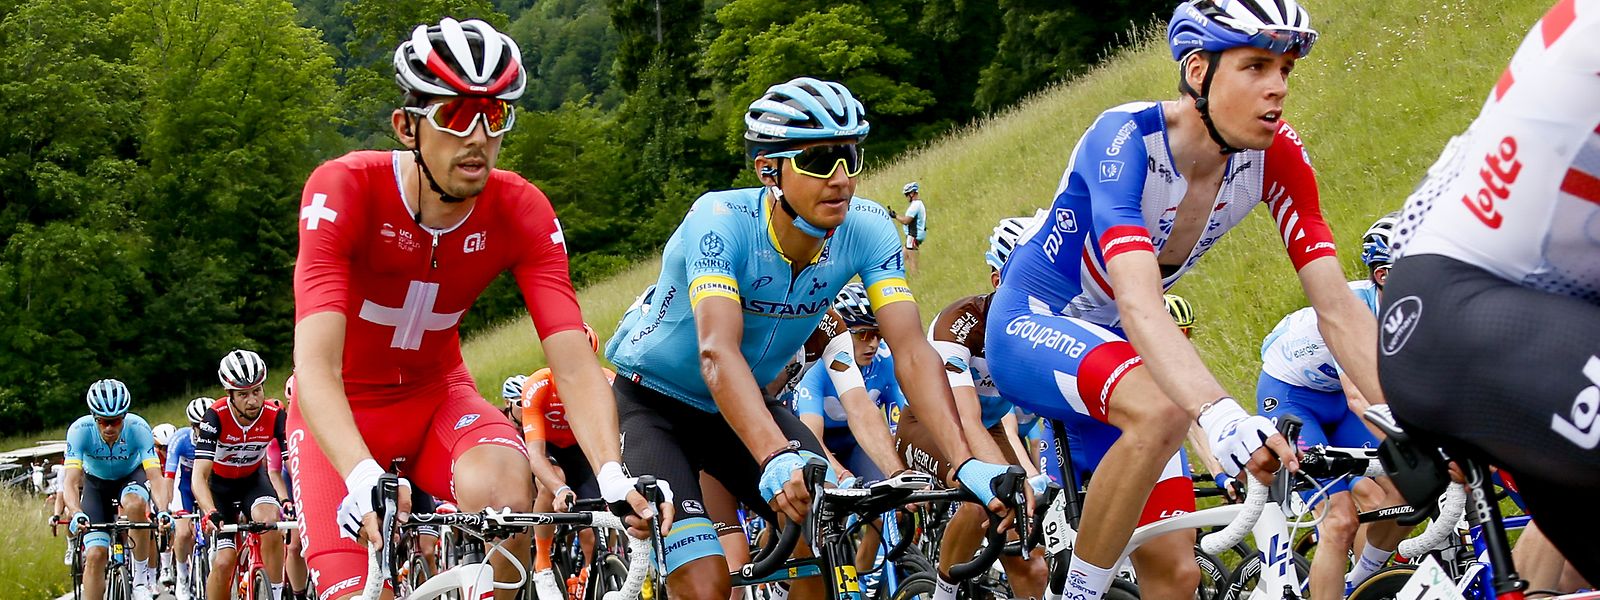 Le Tour de Suisse était pourtant prévu du 7 au 14 juin, soit au-delà du 1er juin, la date actuellement fixée par l'UCI pour la suspension des différentes courses